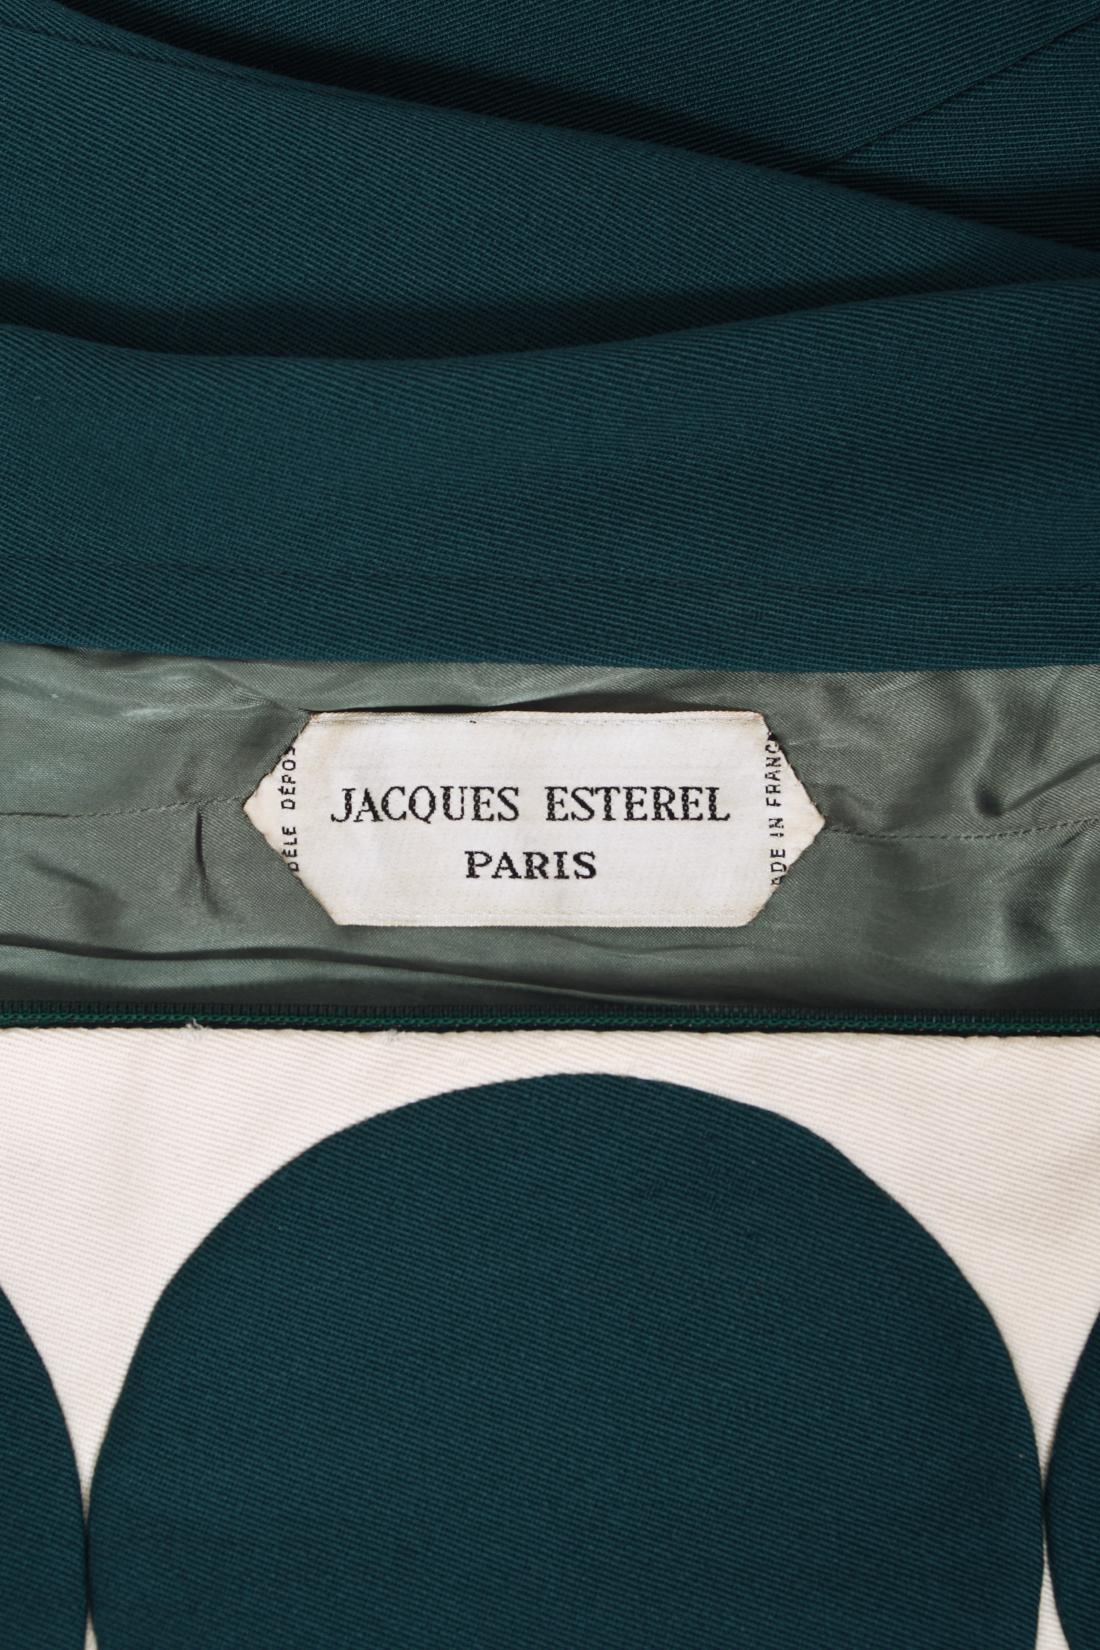 Vintage 1966 Jacques Esterel Haute Couture Documented Teal Blue Op-Art Mod Dress For Sale 12